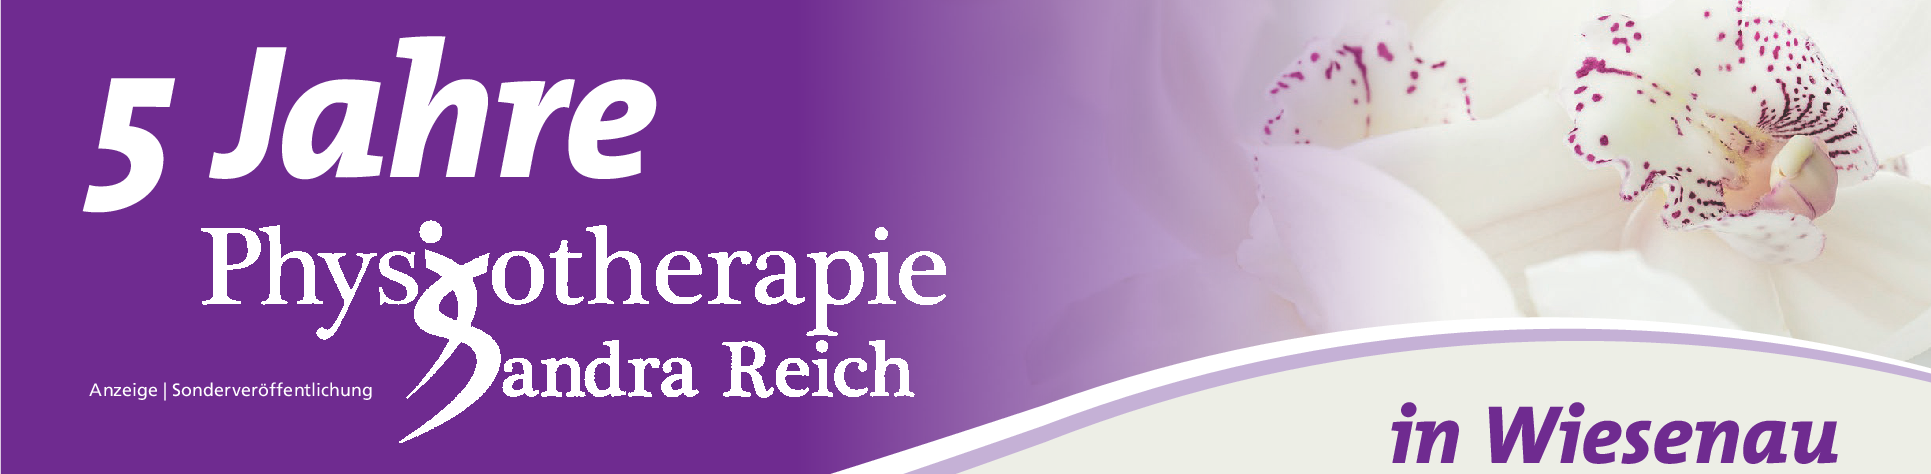 Physiotherapie Sandra Reich in Wiesenau: Mehr Lebensqualität durch Gesundheit im Gleichgewicht